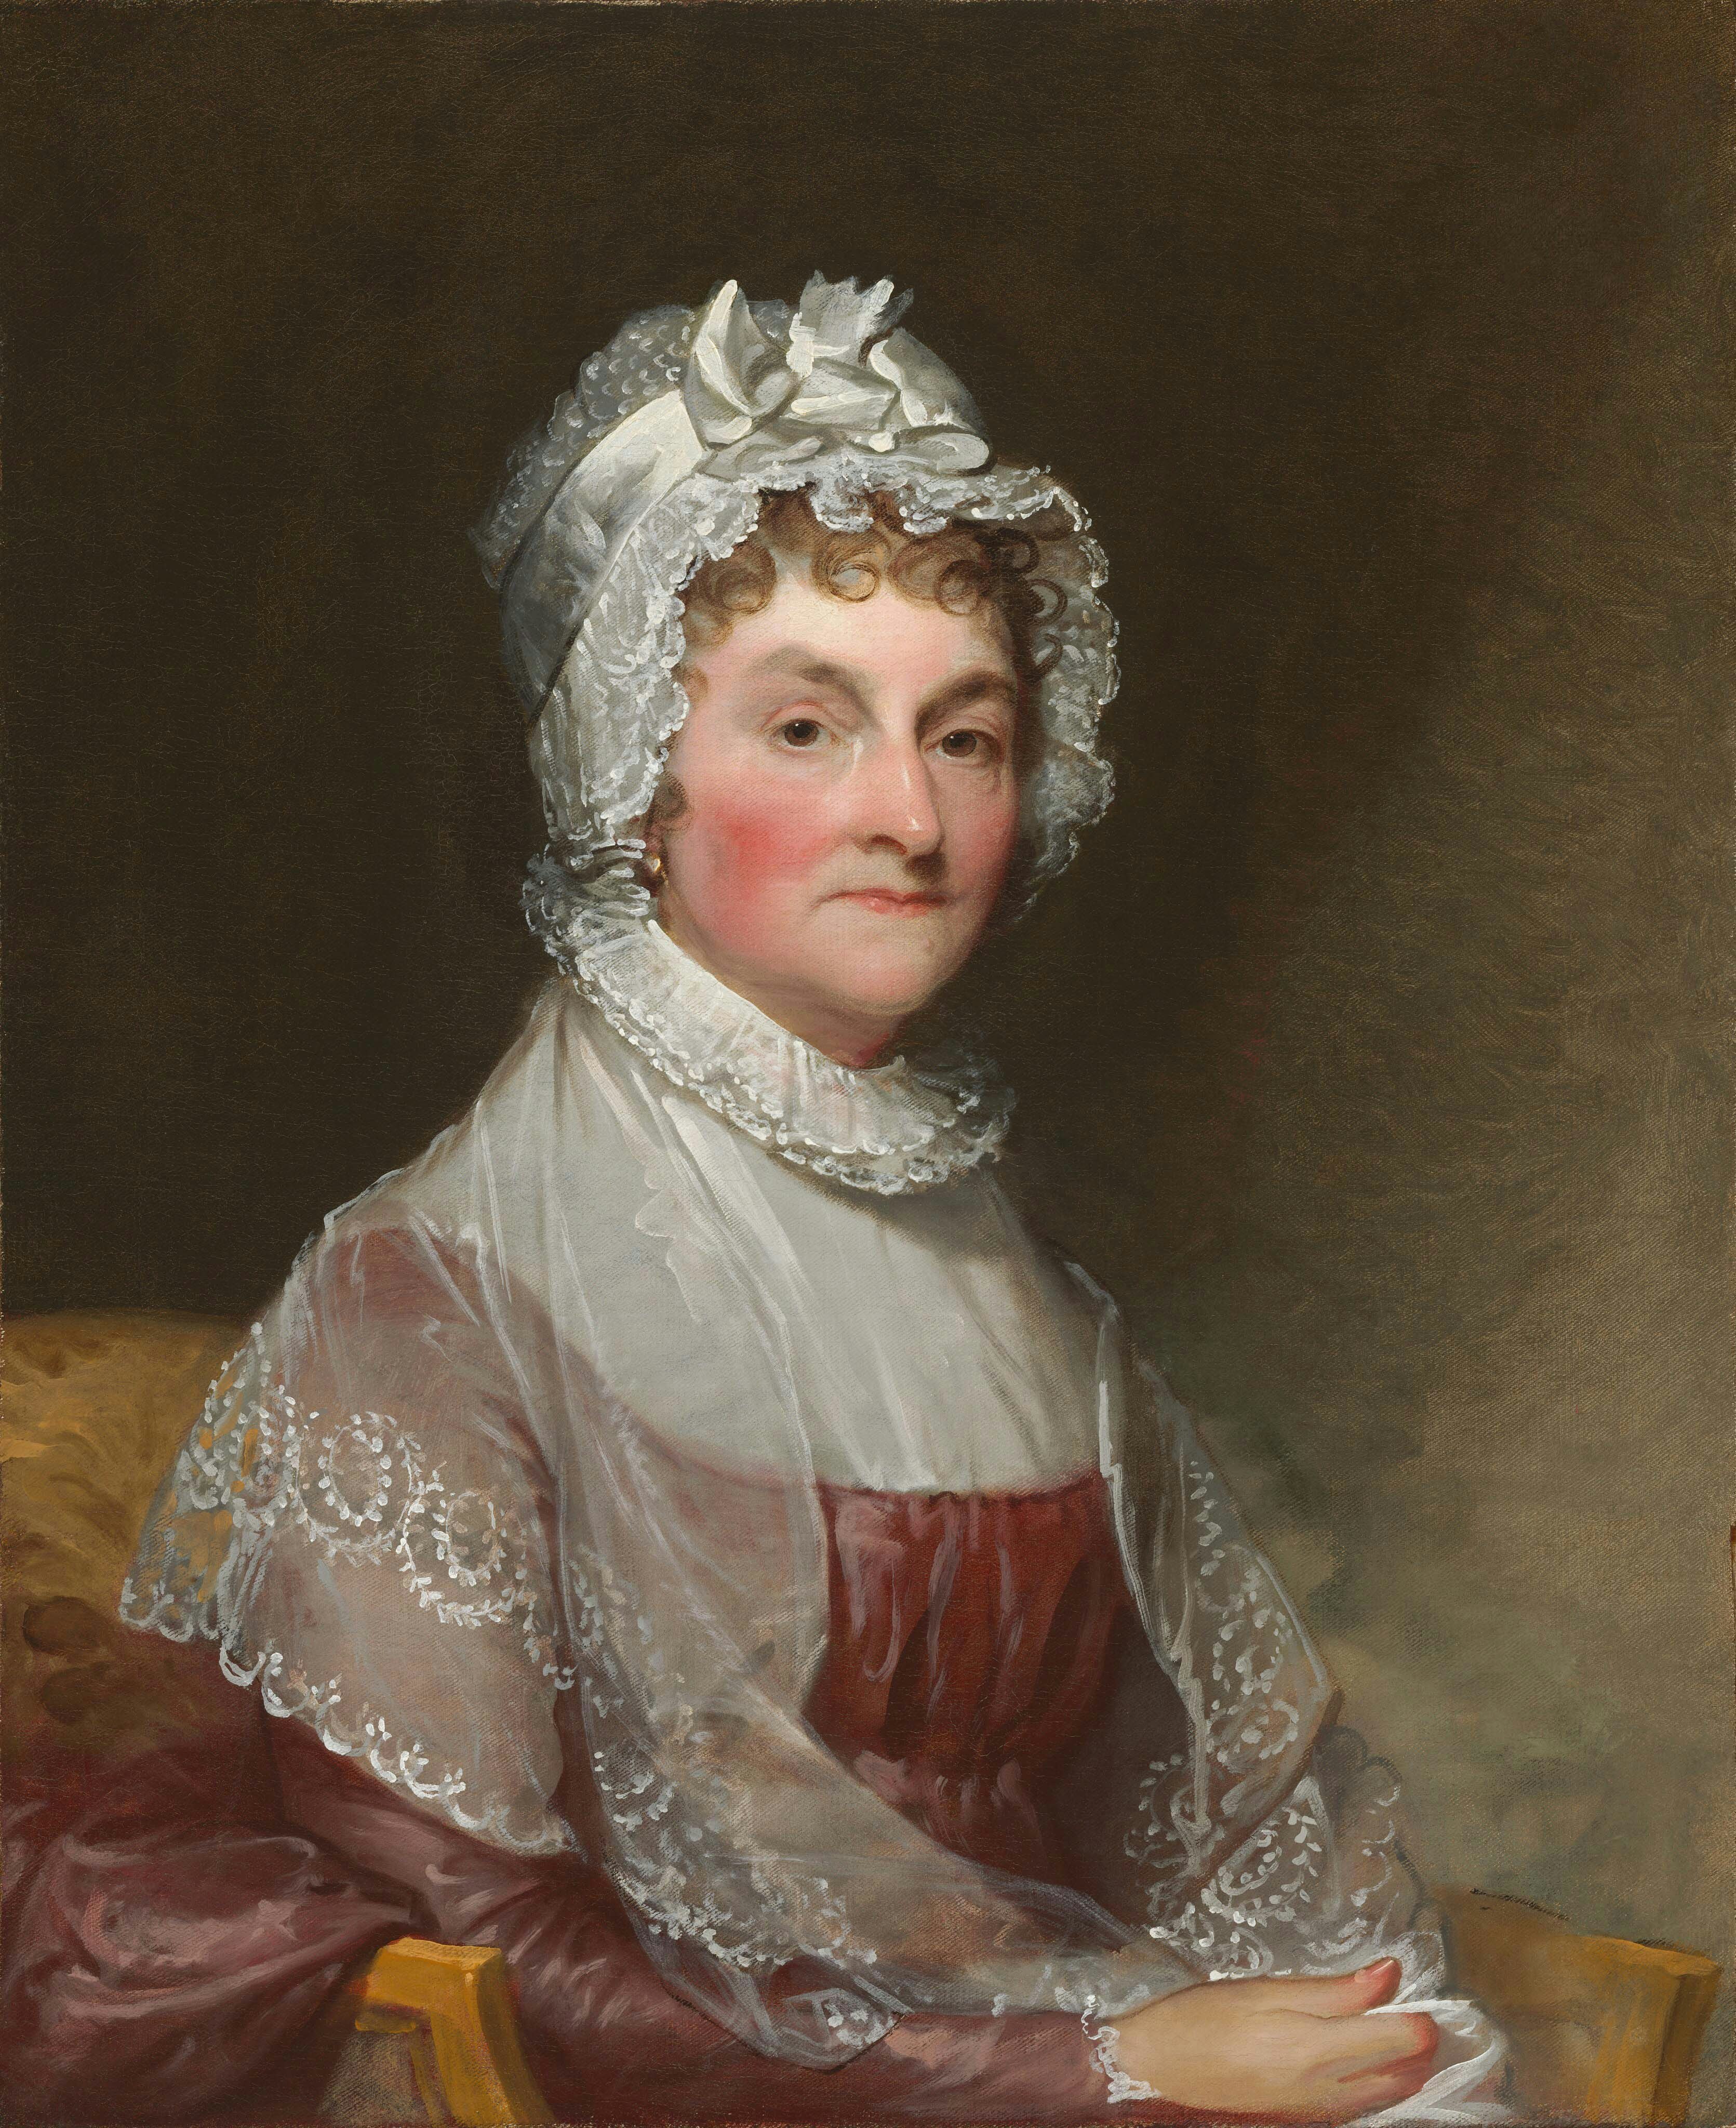 Portrait of Abigail Adams by Gilbert Stuart.